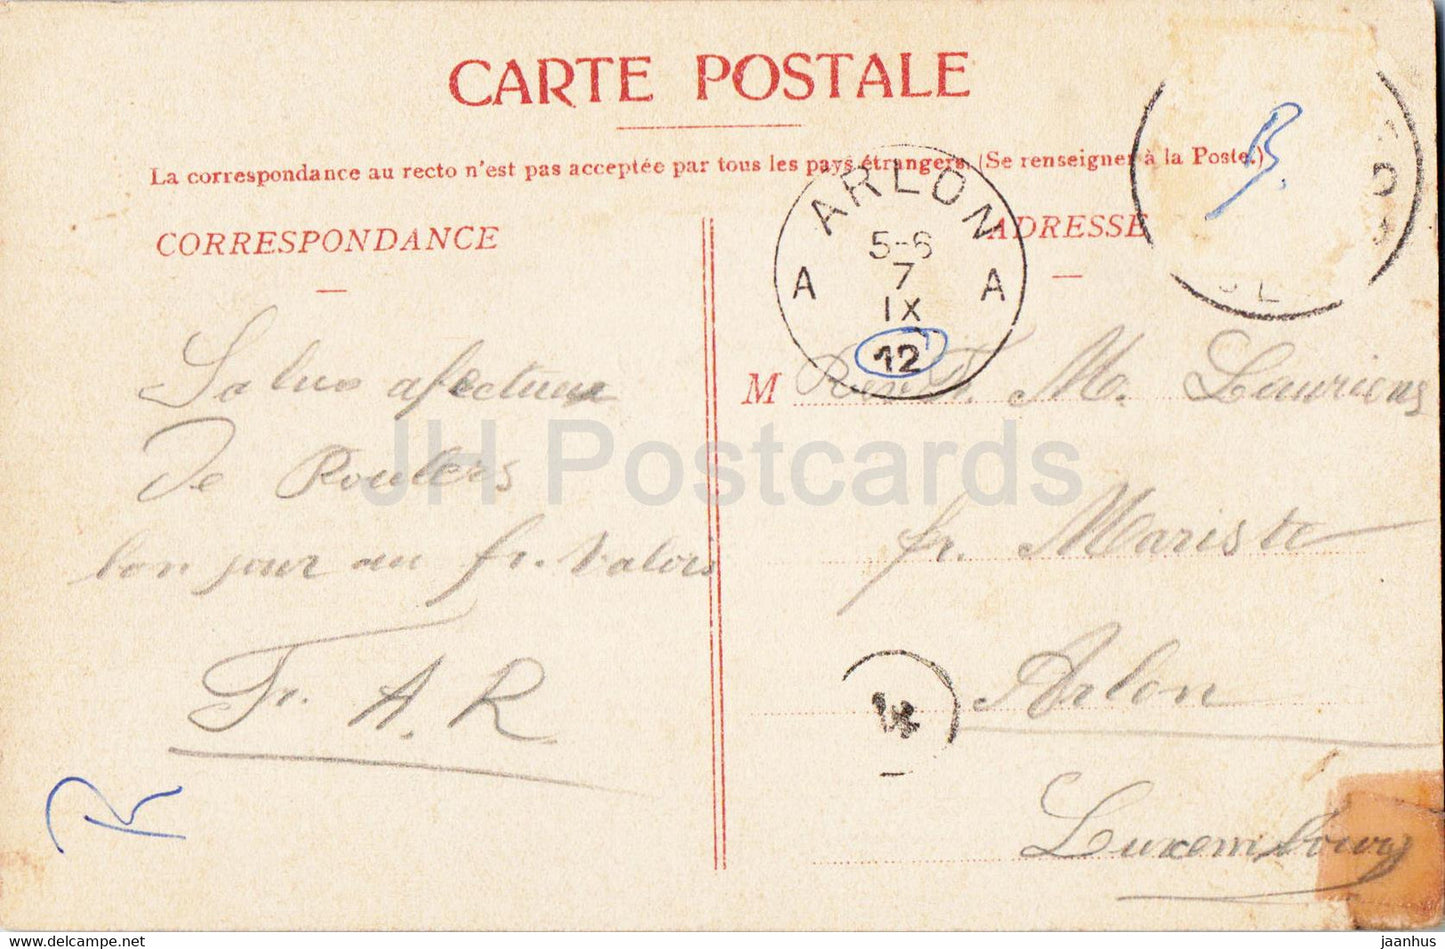 Roeselare - Rousselare Omstreken - Kasteel Graaf de Limbourg Stirum - Rumbeke - old postcard - 1912 - Belgium - used